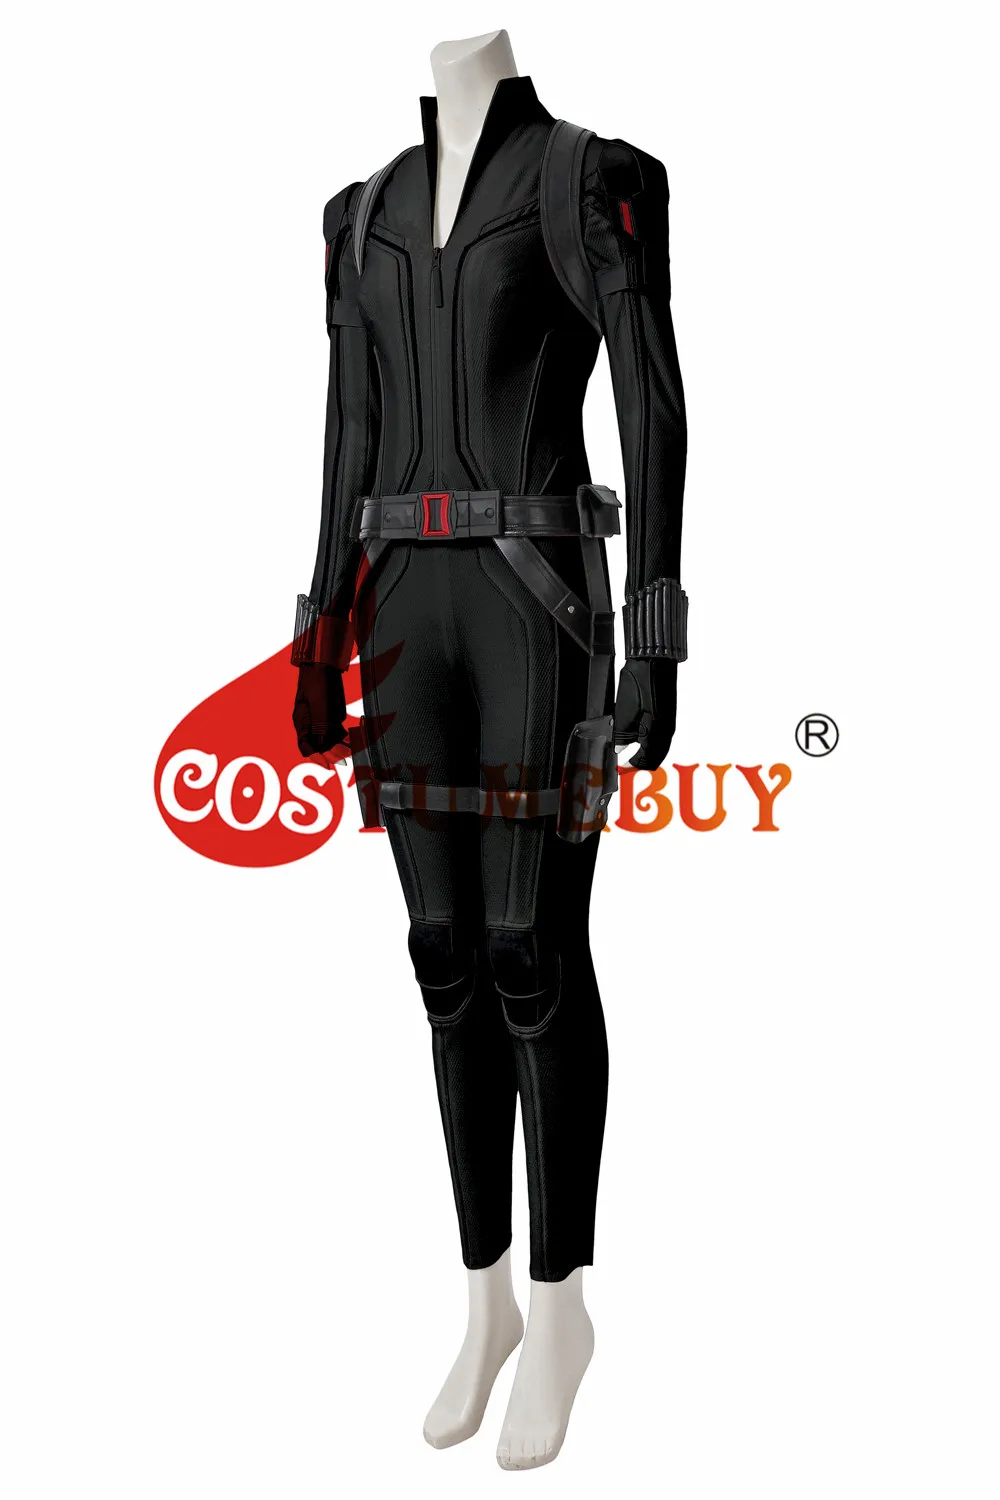 CostumeBuy, черный костюм Наташи ромаофф, черный костюм для взрослых, Женский костюм супергероя, черная вдова, сексуальный комбинезон, костюм L920